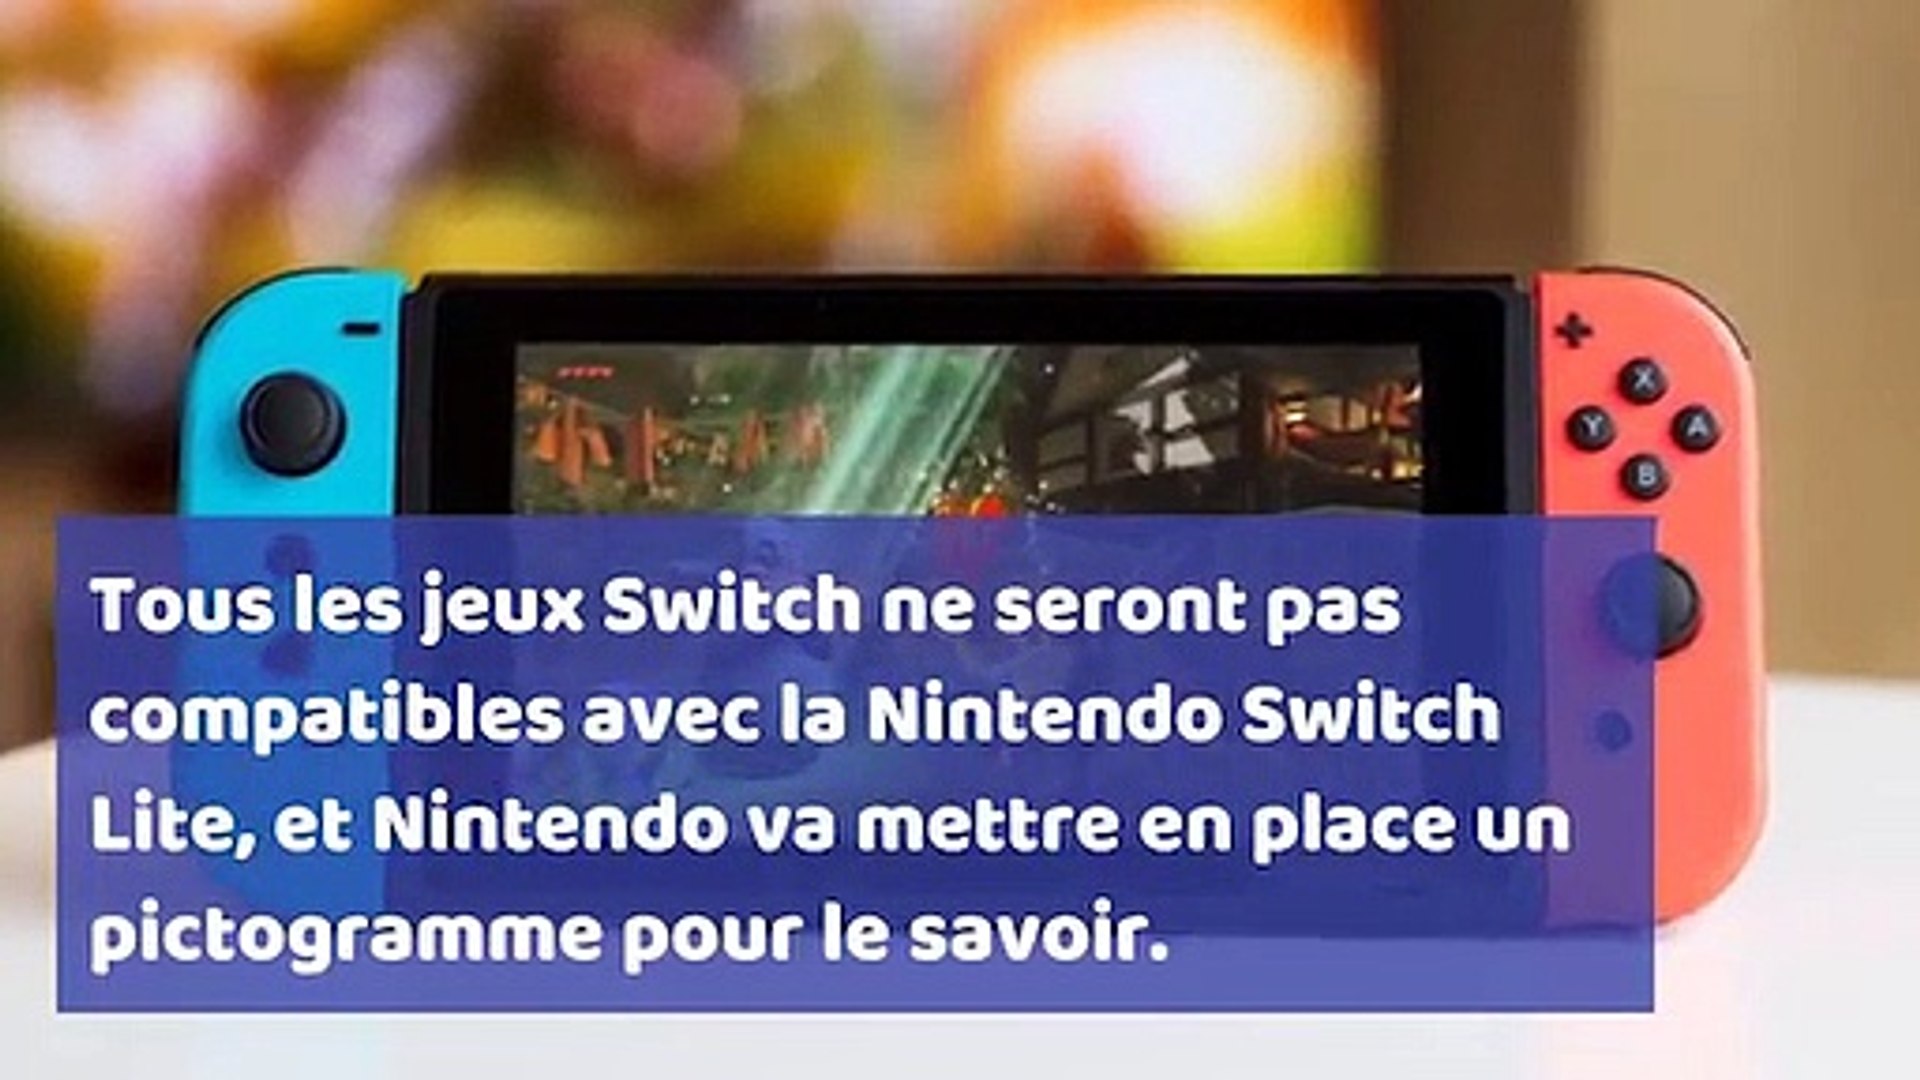 Nintendo Switch Lite : comment savoir si un jeu est compatible avec le mode  Portable ? - Vidéo Dailymotion